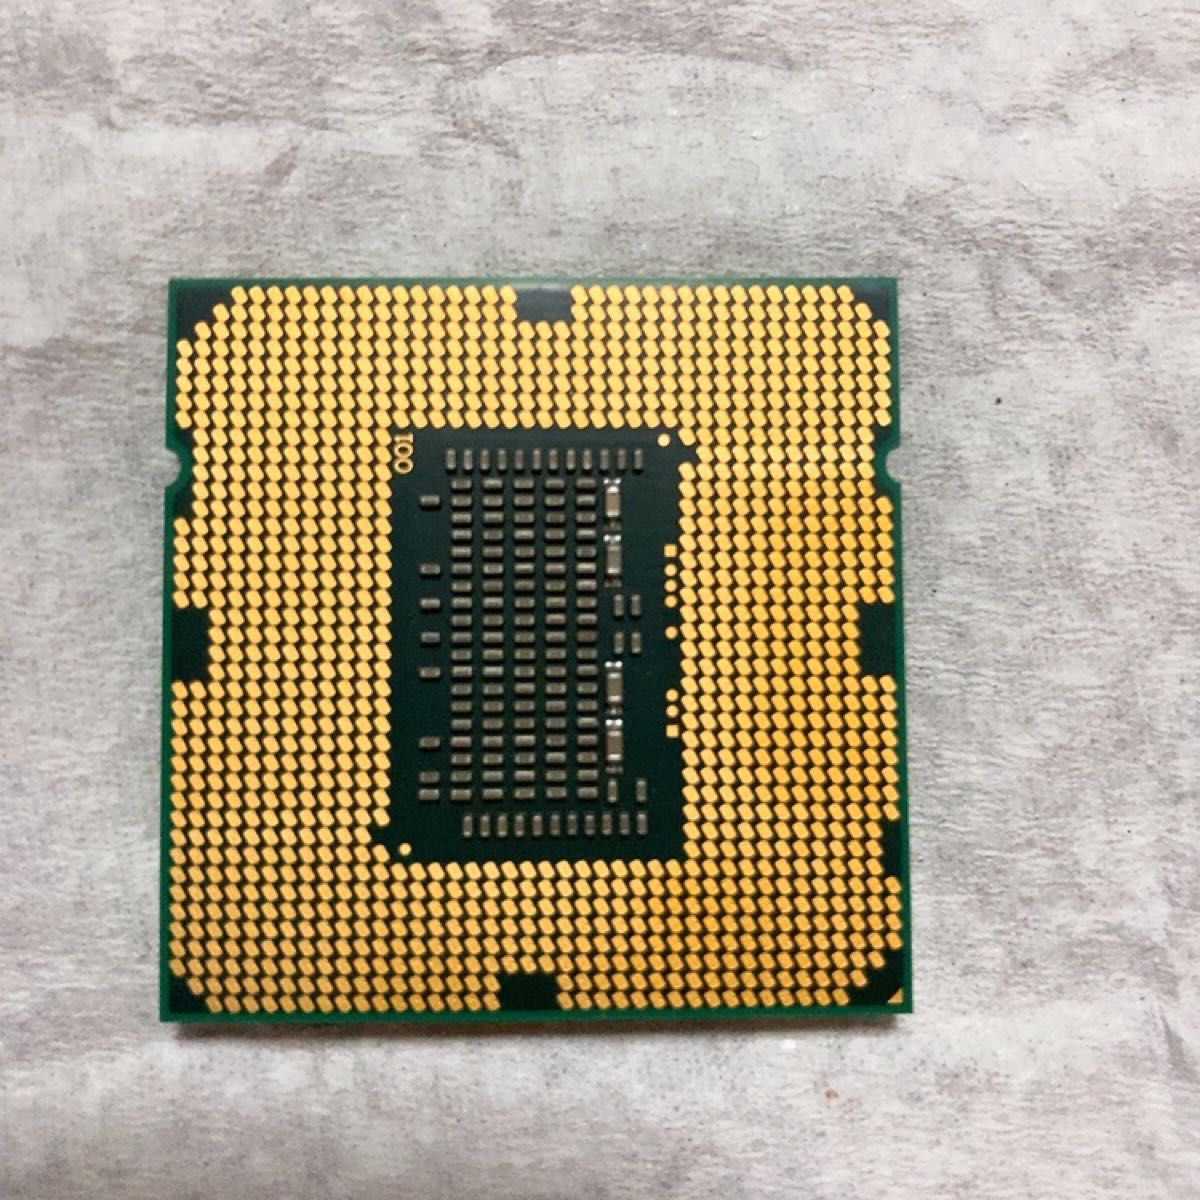 別倉庫からの配送 Intel Xeon Processor E3-1225 v6 3.30GHz 4コア 4